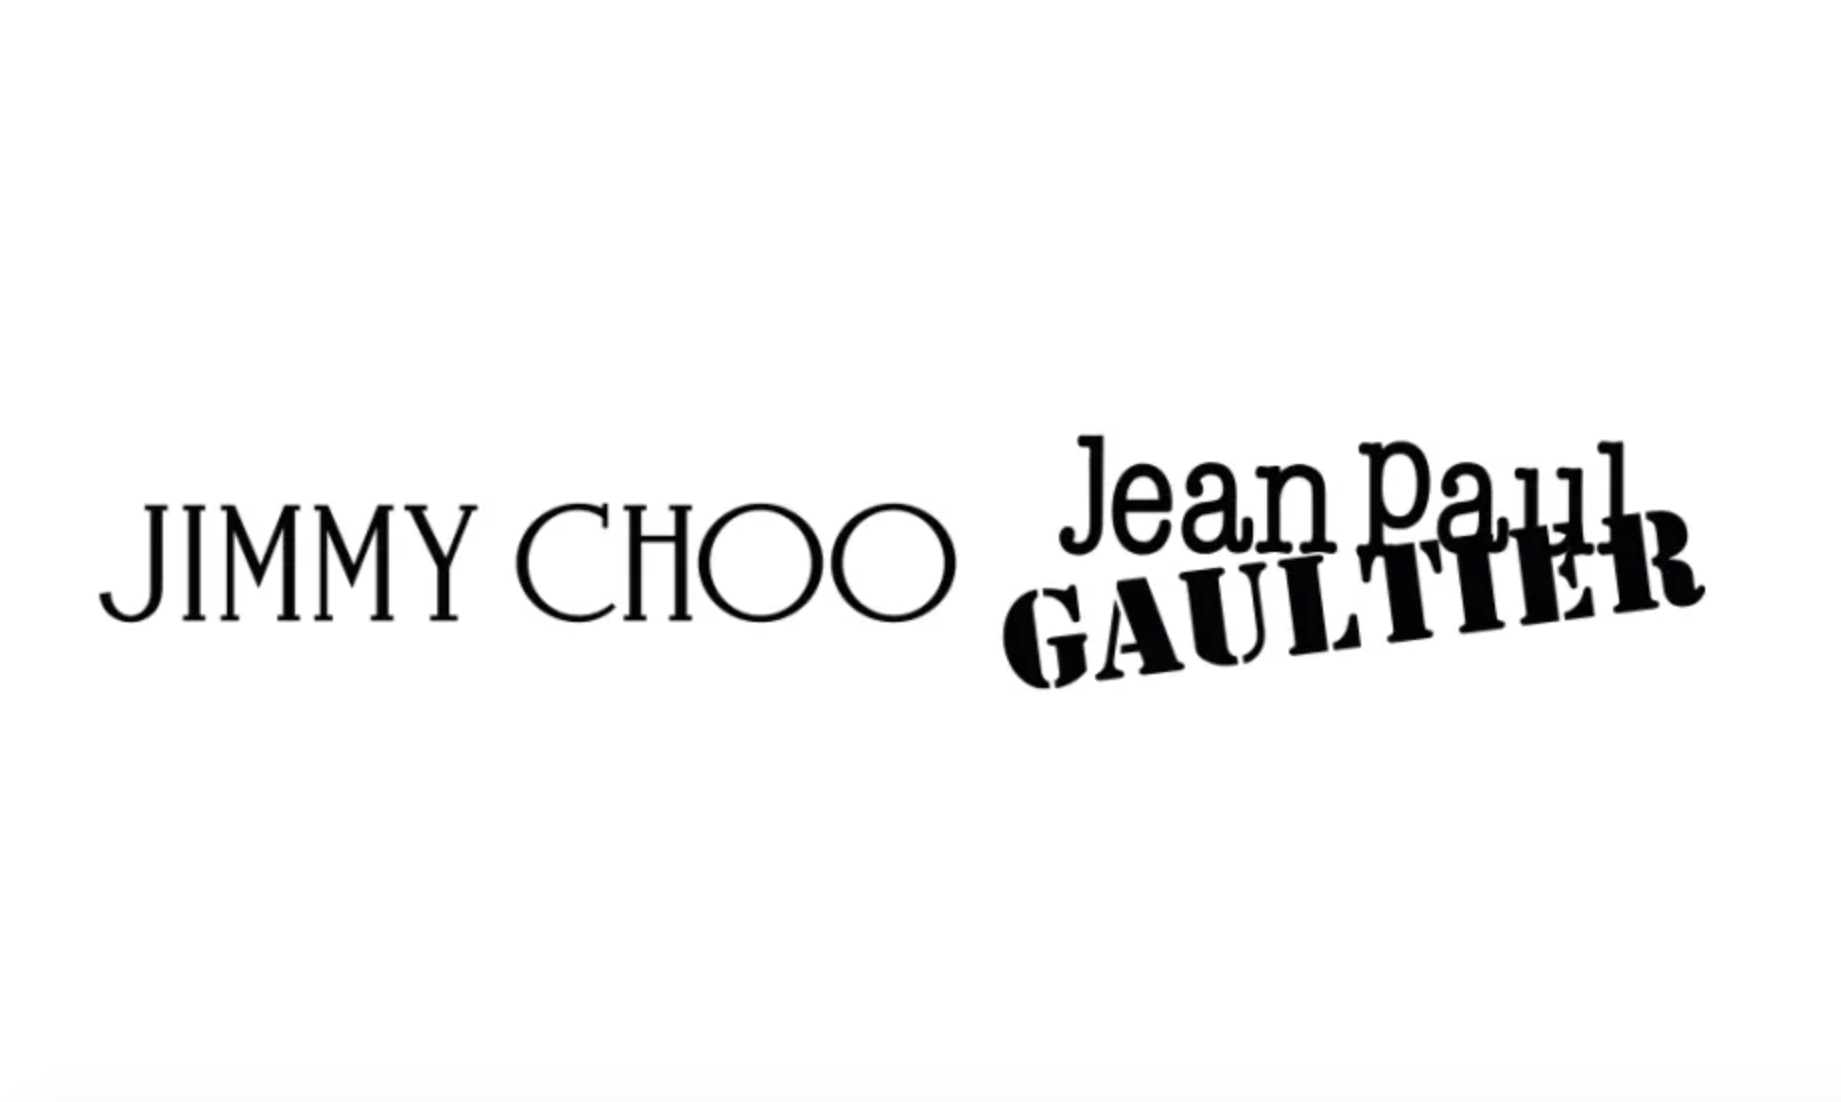 Jimmy Choo 携手 Jean Paul Gaultier 推出鞋履系列